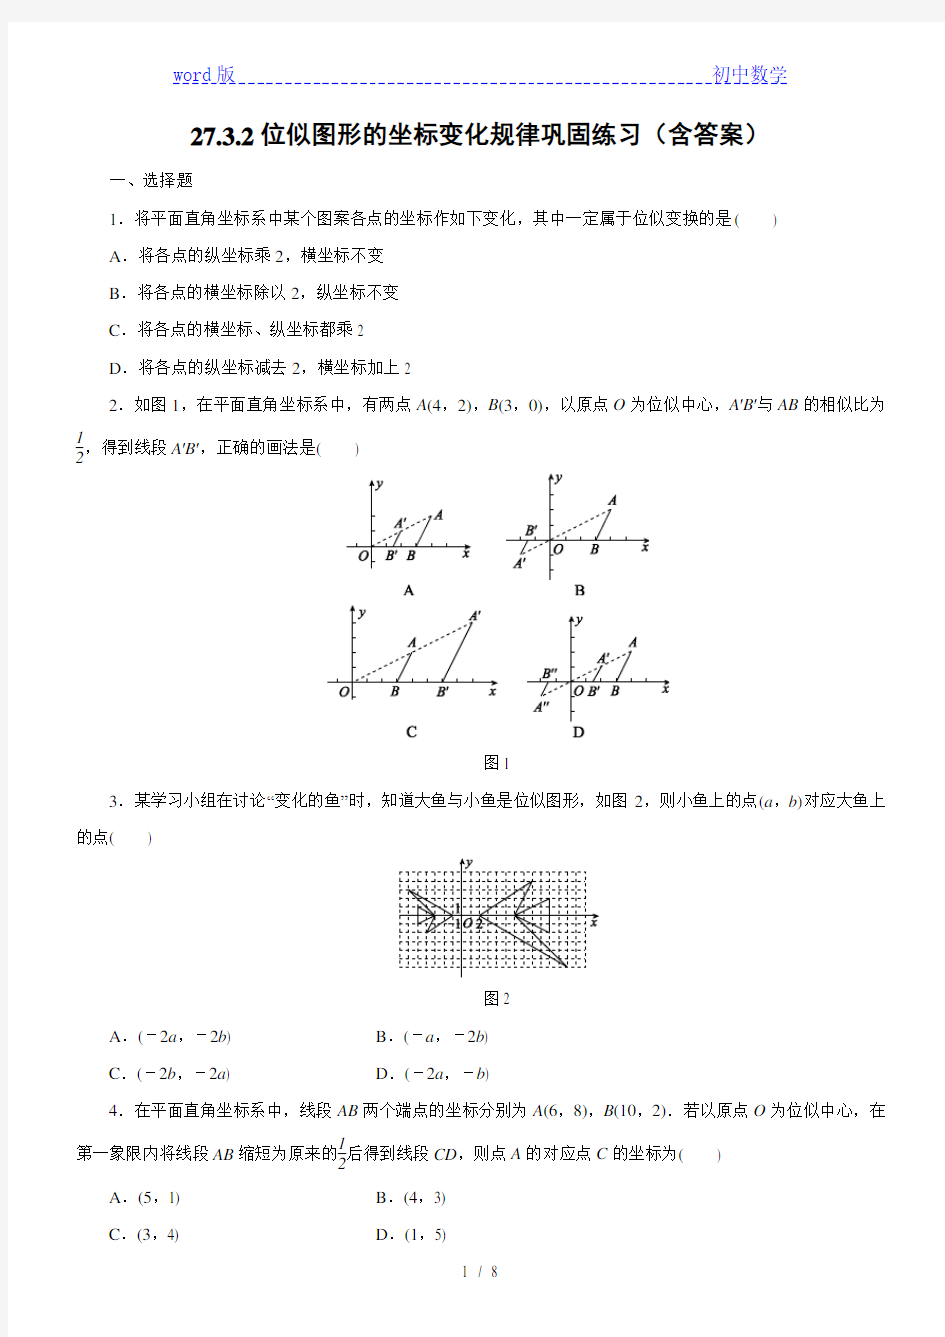 人教版九年级数学下册 27.3.2位似图形的坐标变化规律巩固练习(含答案)